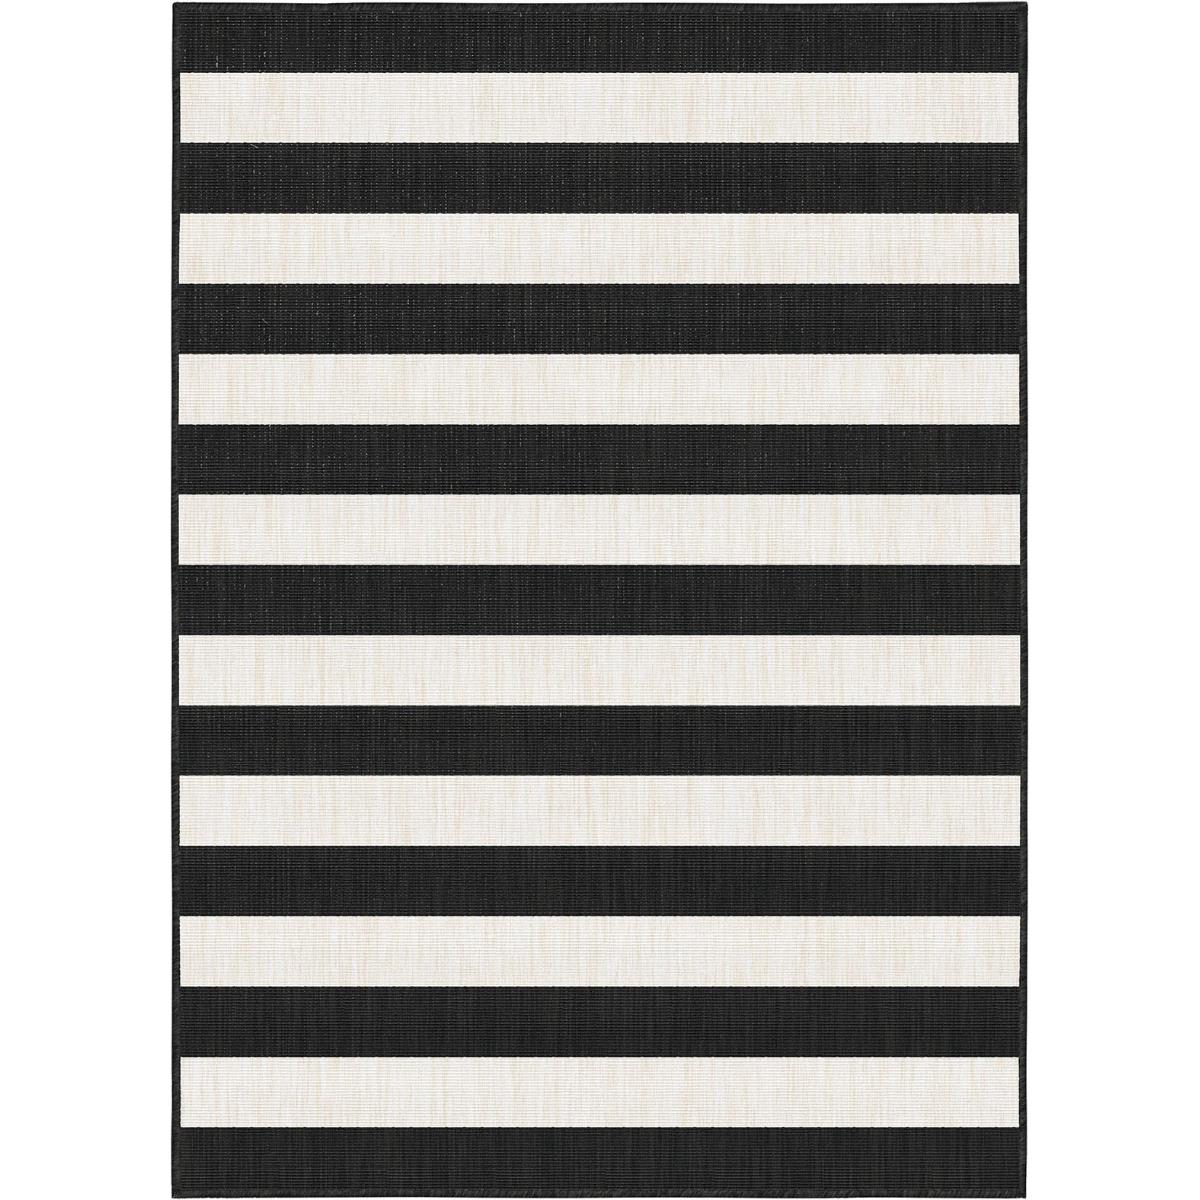 Activeren Toelating anker Interieur05 Buitenkleed Stripes zwart/wit dubbelzijdig - 200x290 cm kopen?  Shop bij fonQ!